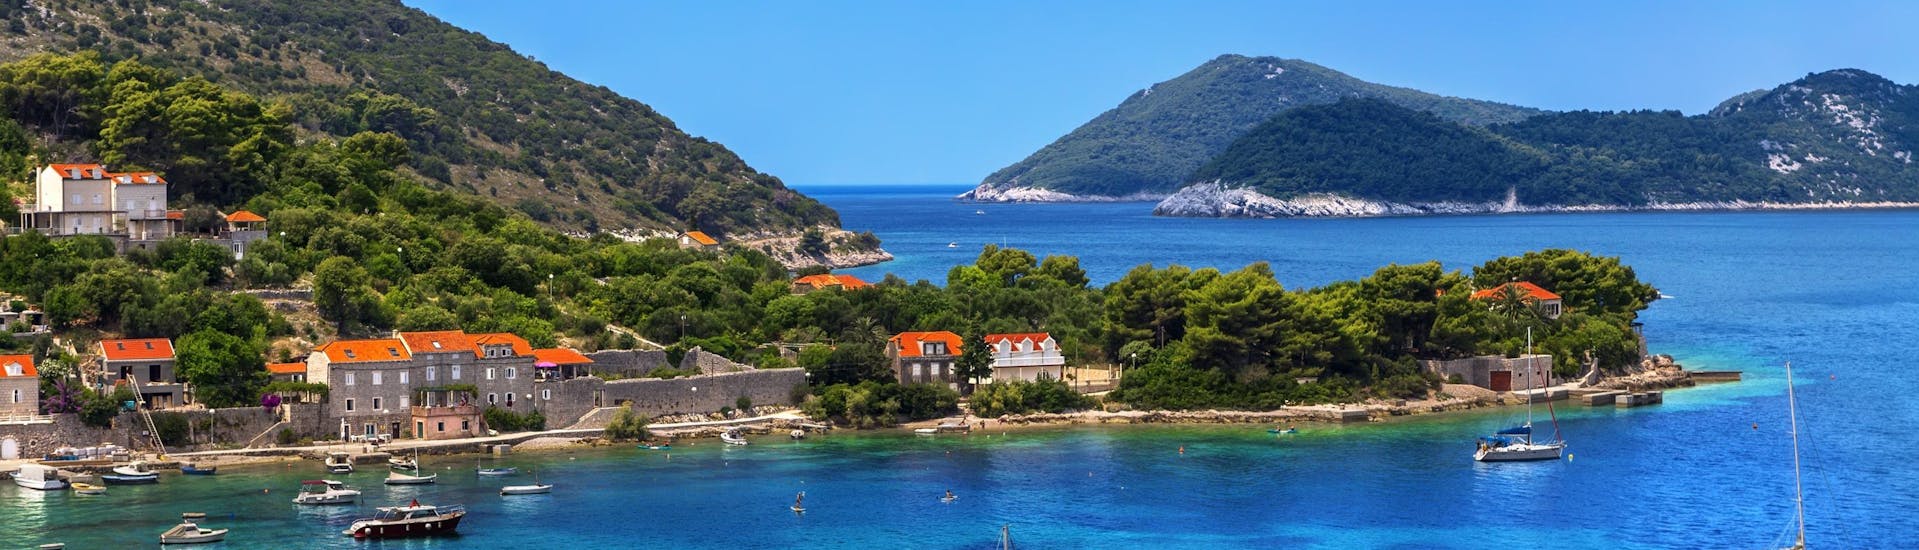 Bild der Insel Kolocep, die zu den Elaphiti-Inseln vor der Küste Dubrovniks gehört und ein beliebtes Ziel für Bootsausflüge ist.